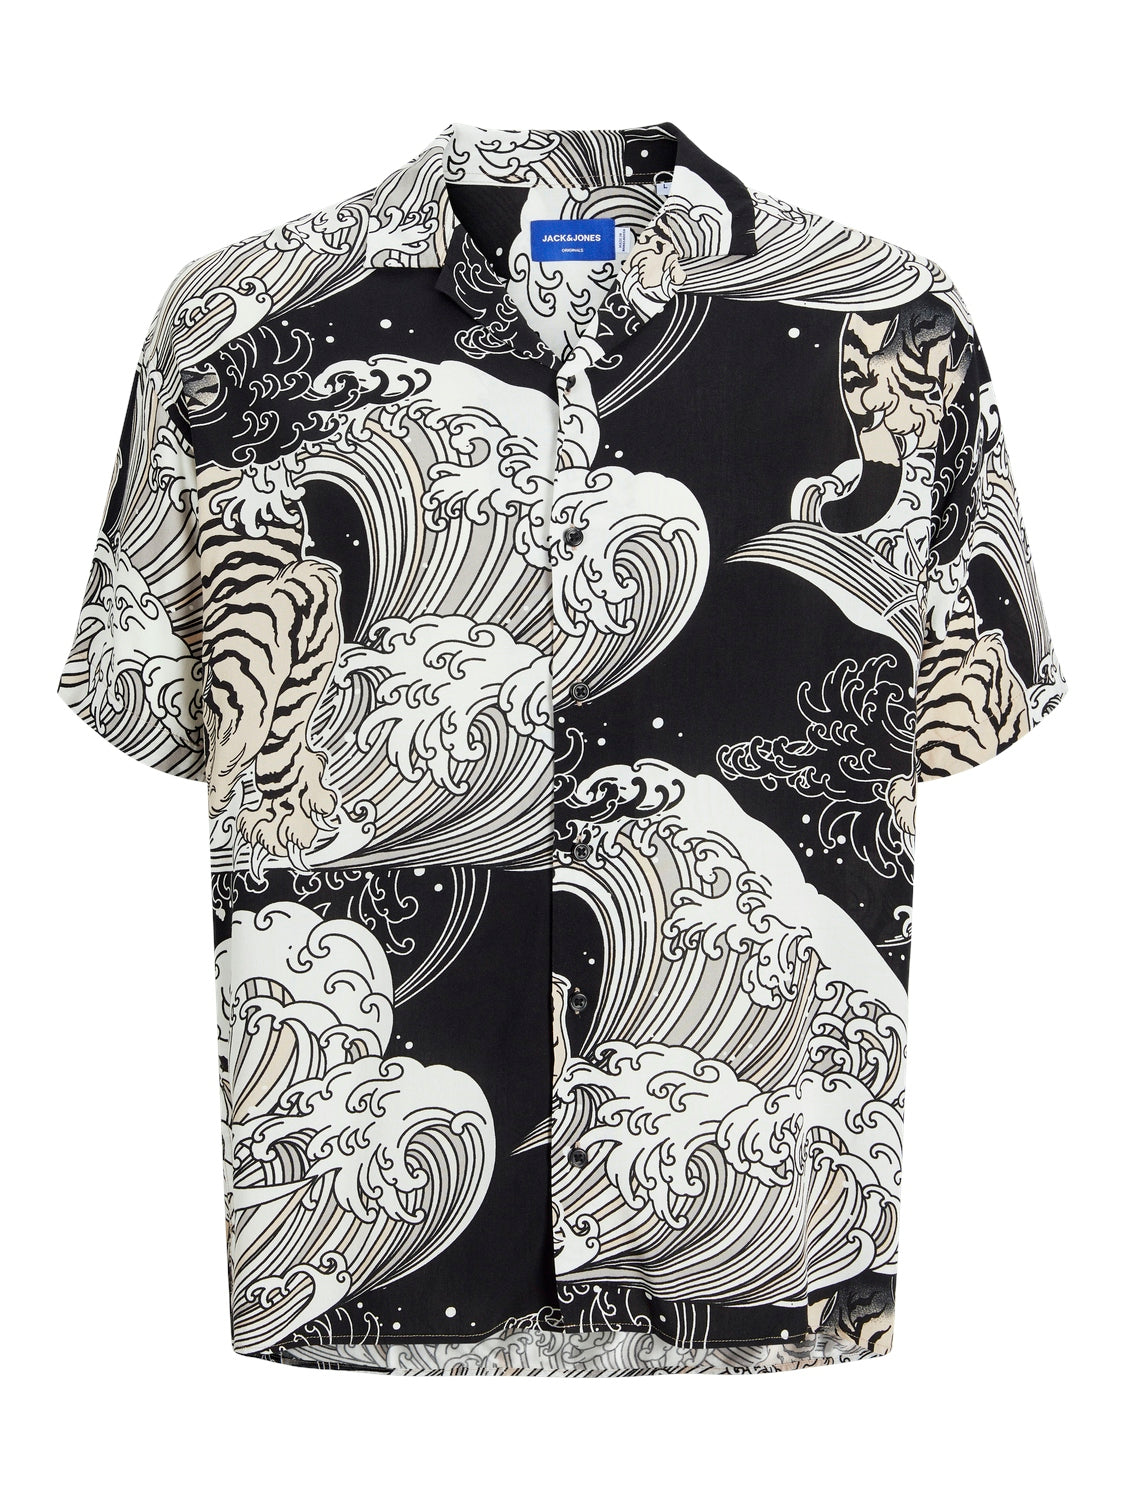 m tops - JACK JONES - Luke Japanese Resort Shirt - PLENTY